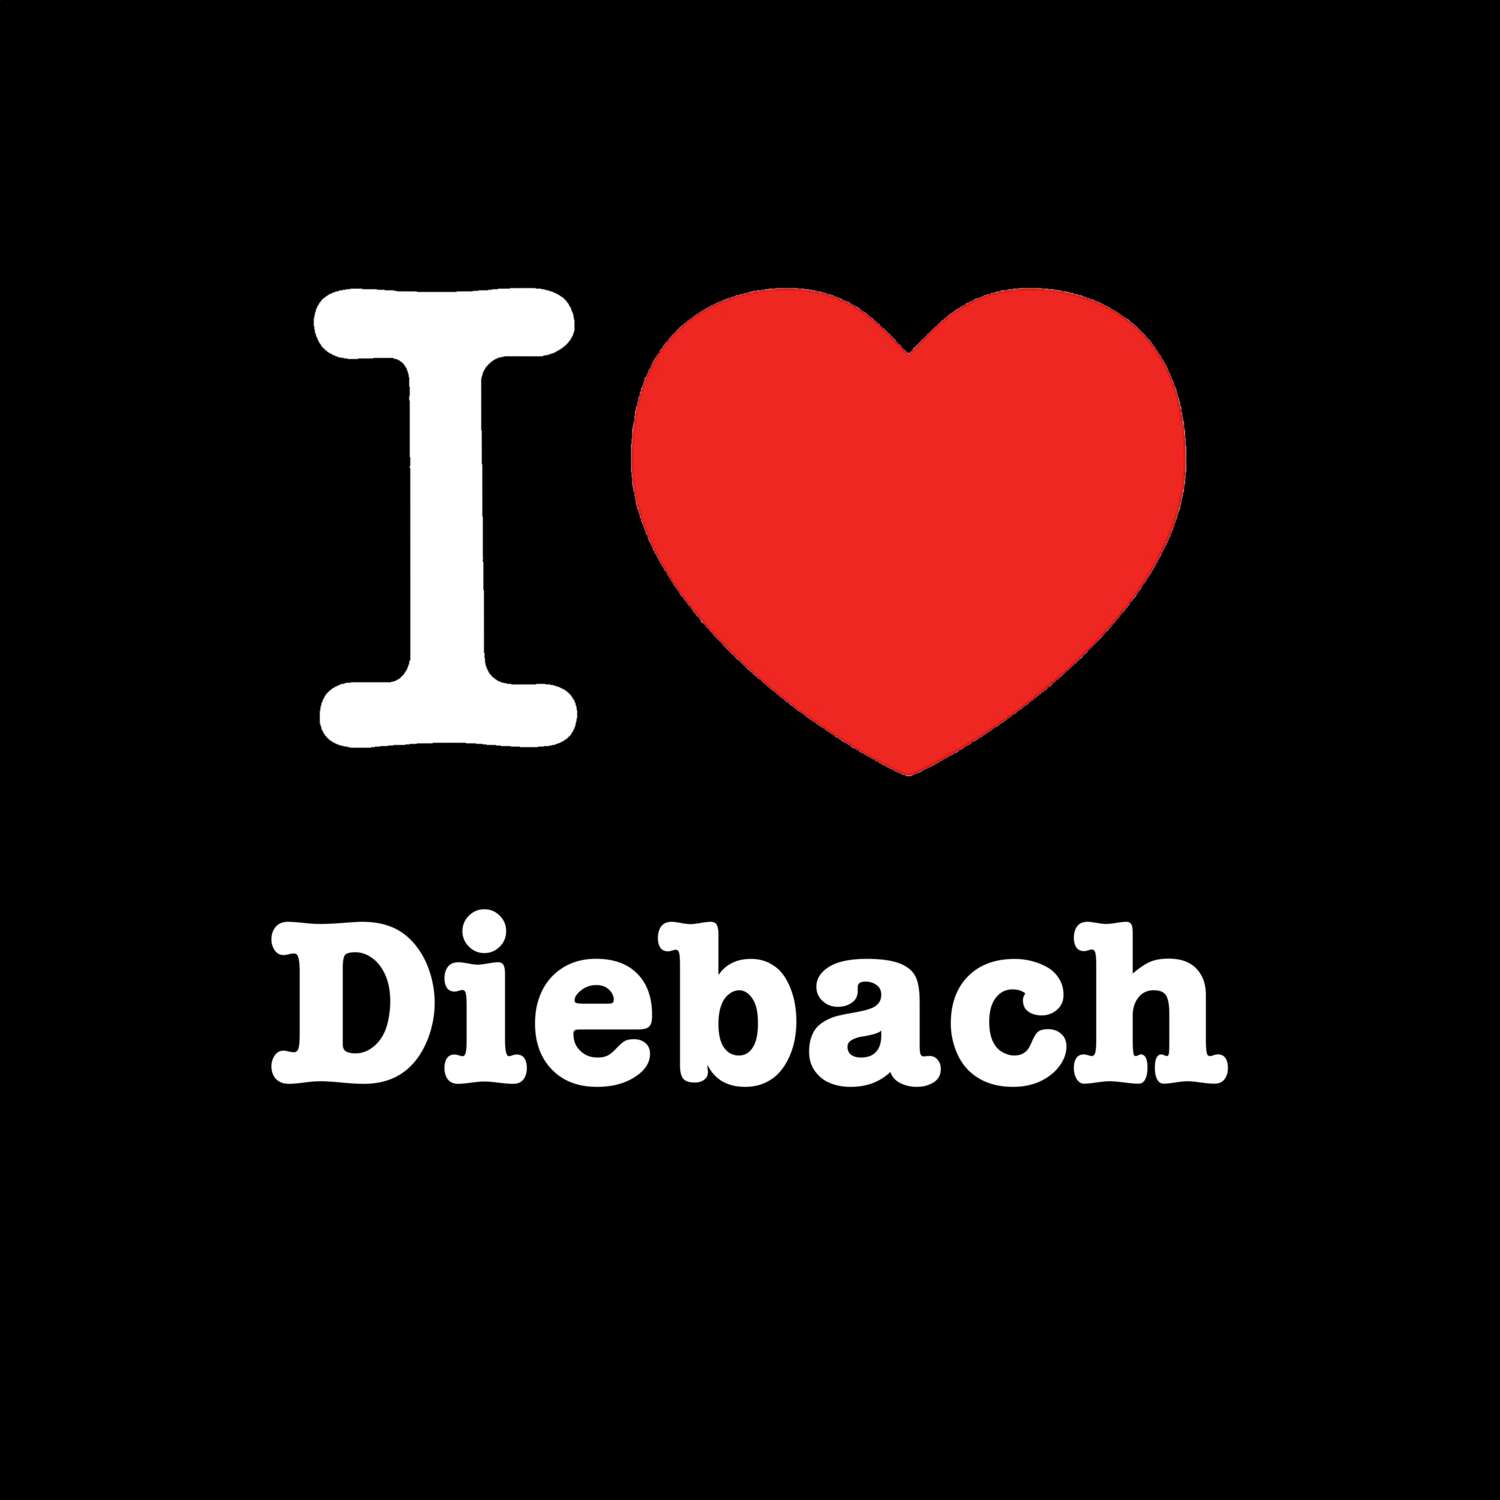 Diebach T-Shirt »I love«